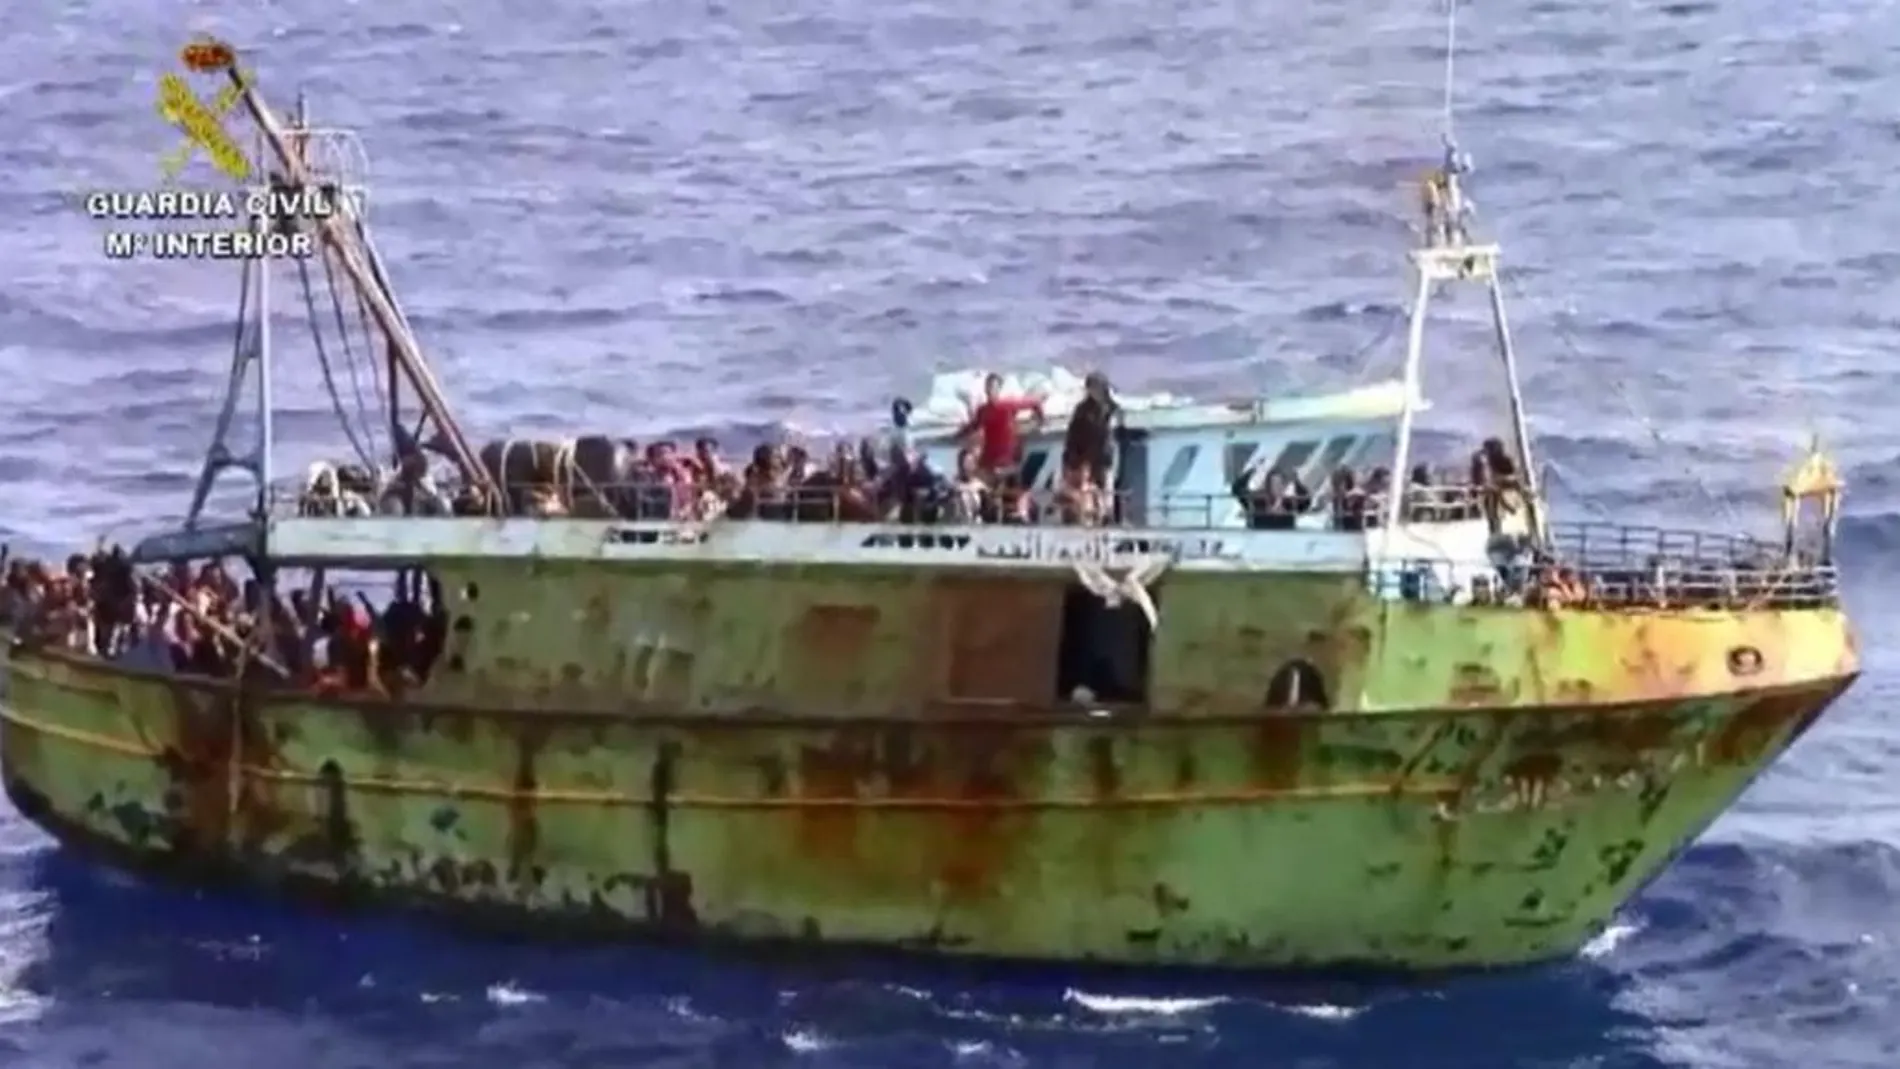 La Guardia Civil rescata a 714 inmigrantes en el Mediterráneo Central en menos de dos semanas